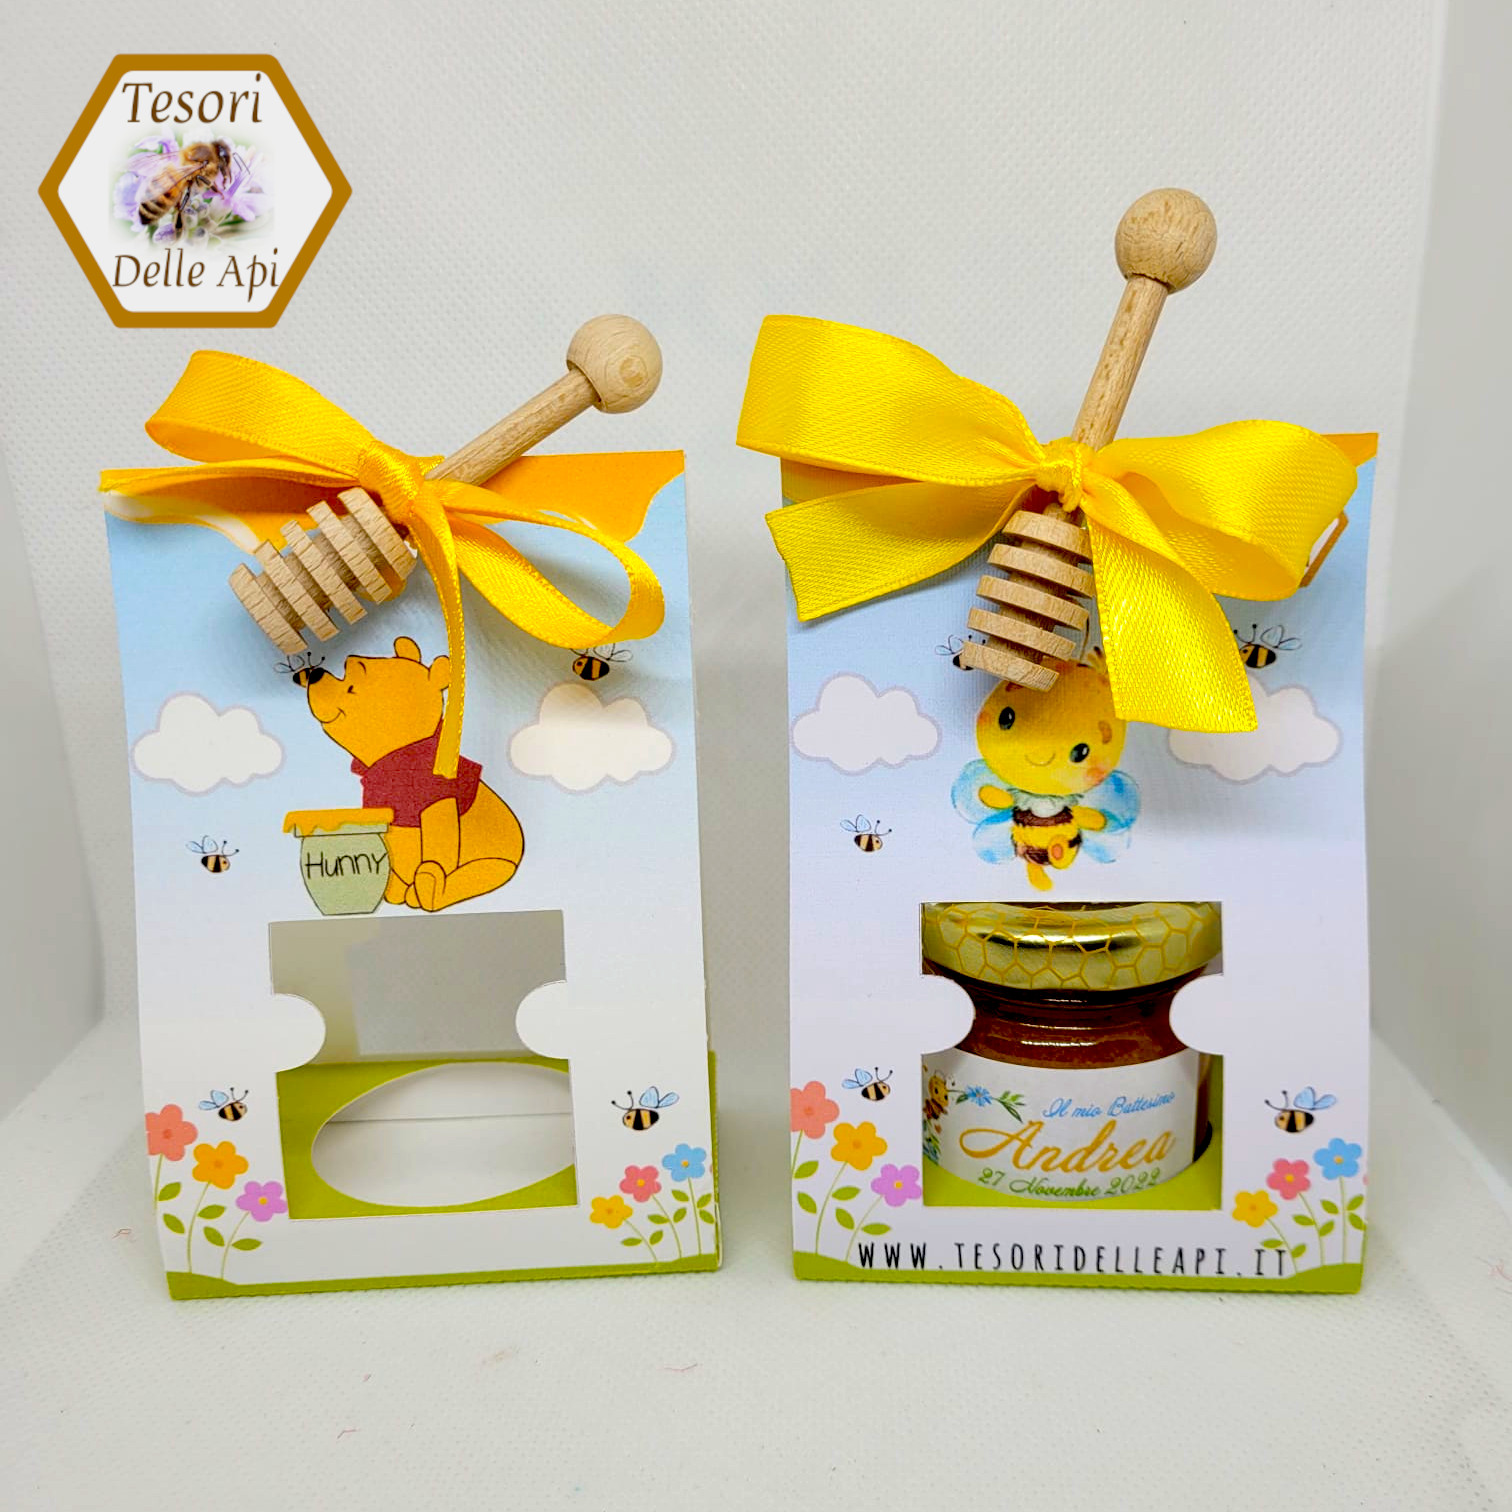 Miele e Bustina in cartoncino personalizzata con spargimiele in legno